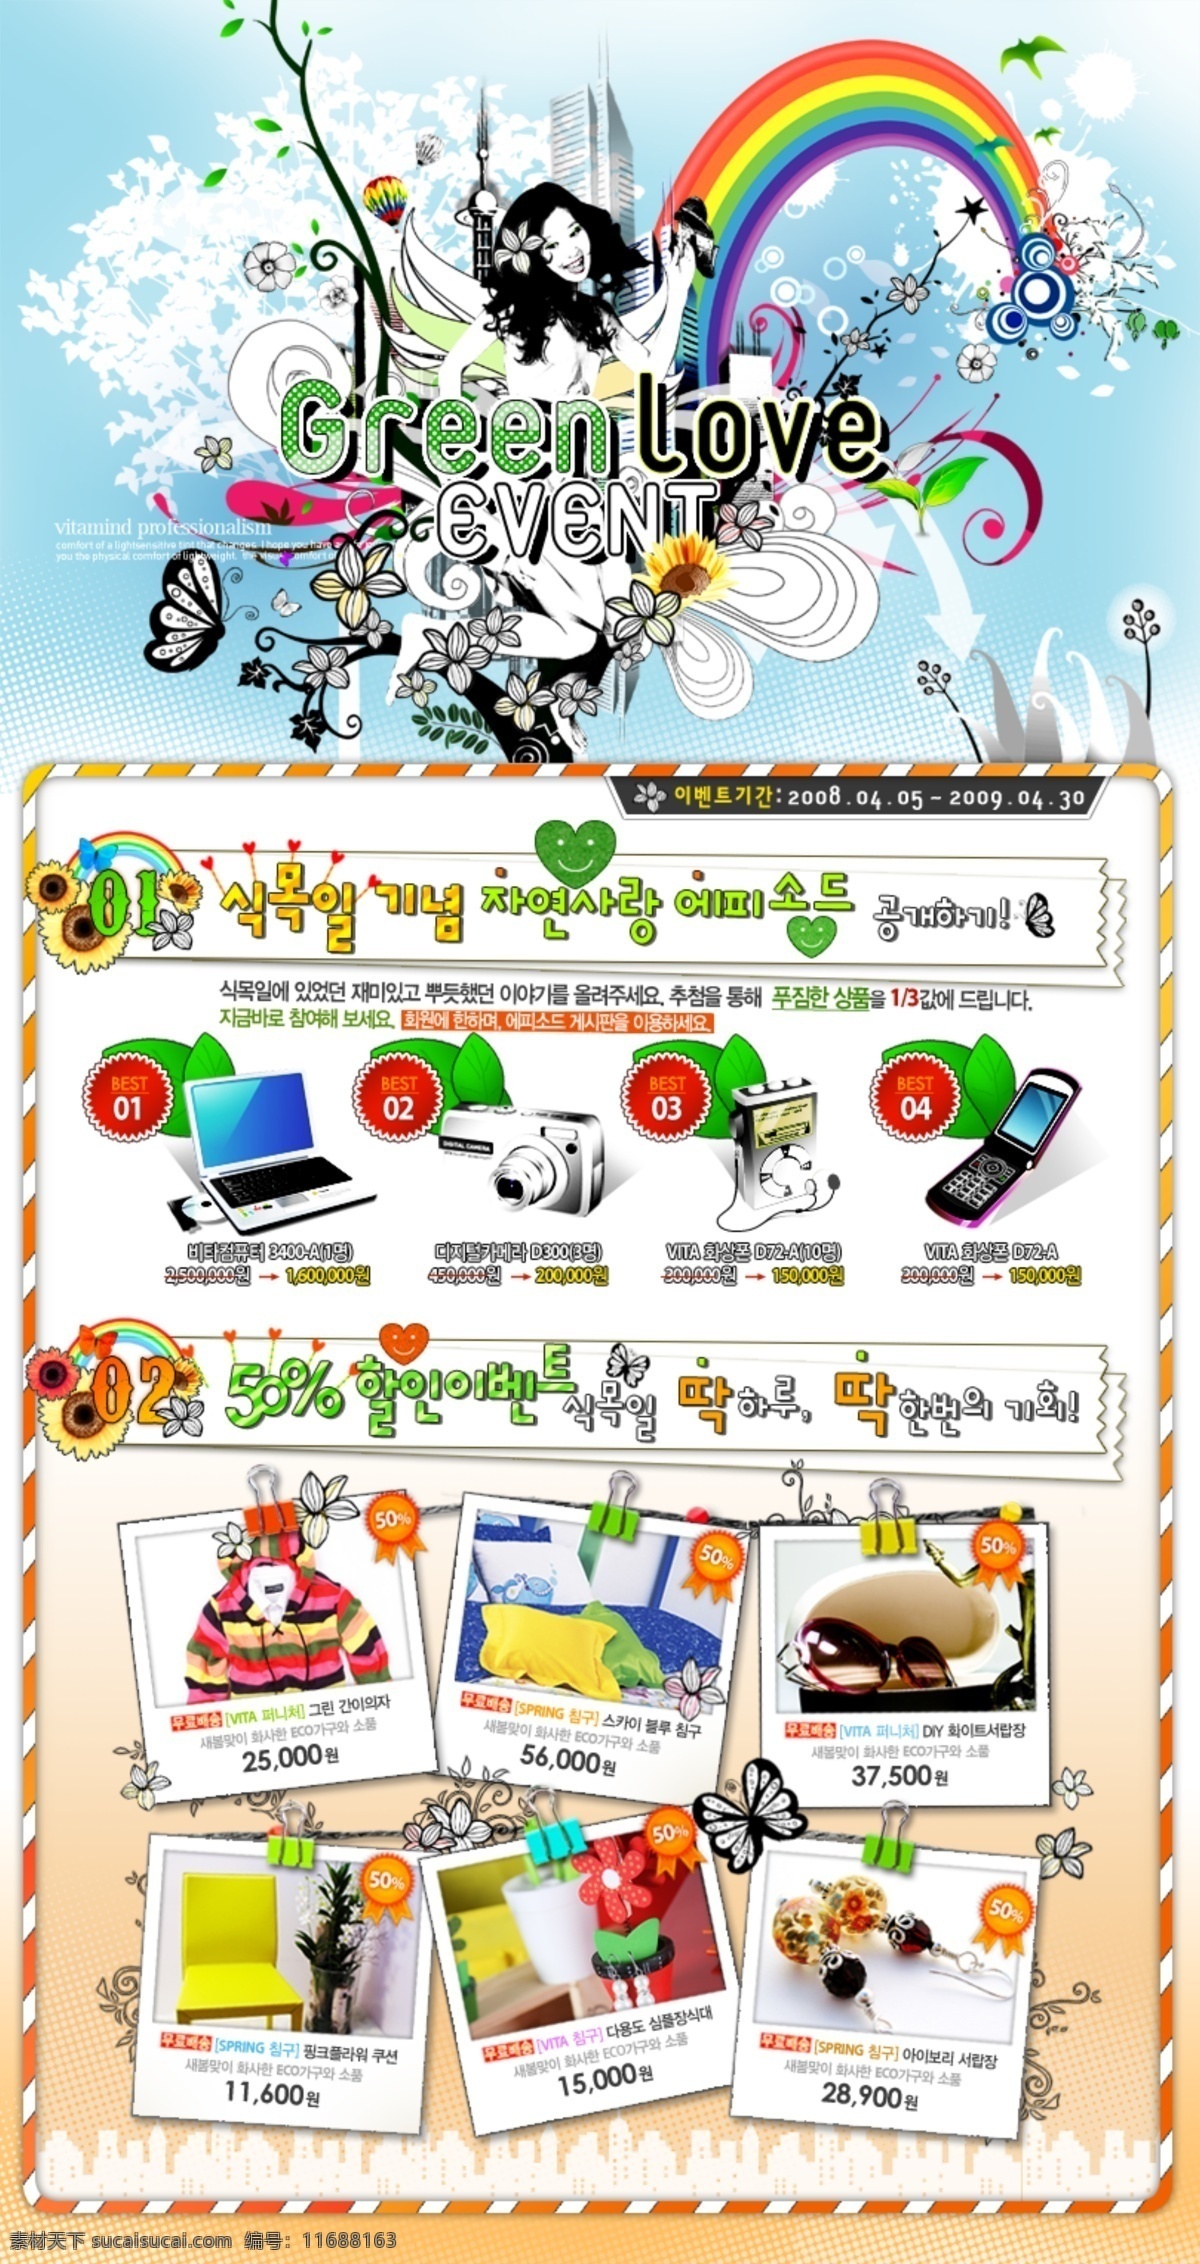 韩国 风格 海报 模板 分层 海报模板 海报招贴 韩国风格 平面模板 分层psd 设计素材 psd源文件 白色